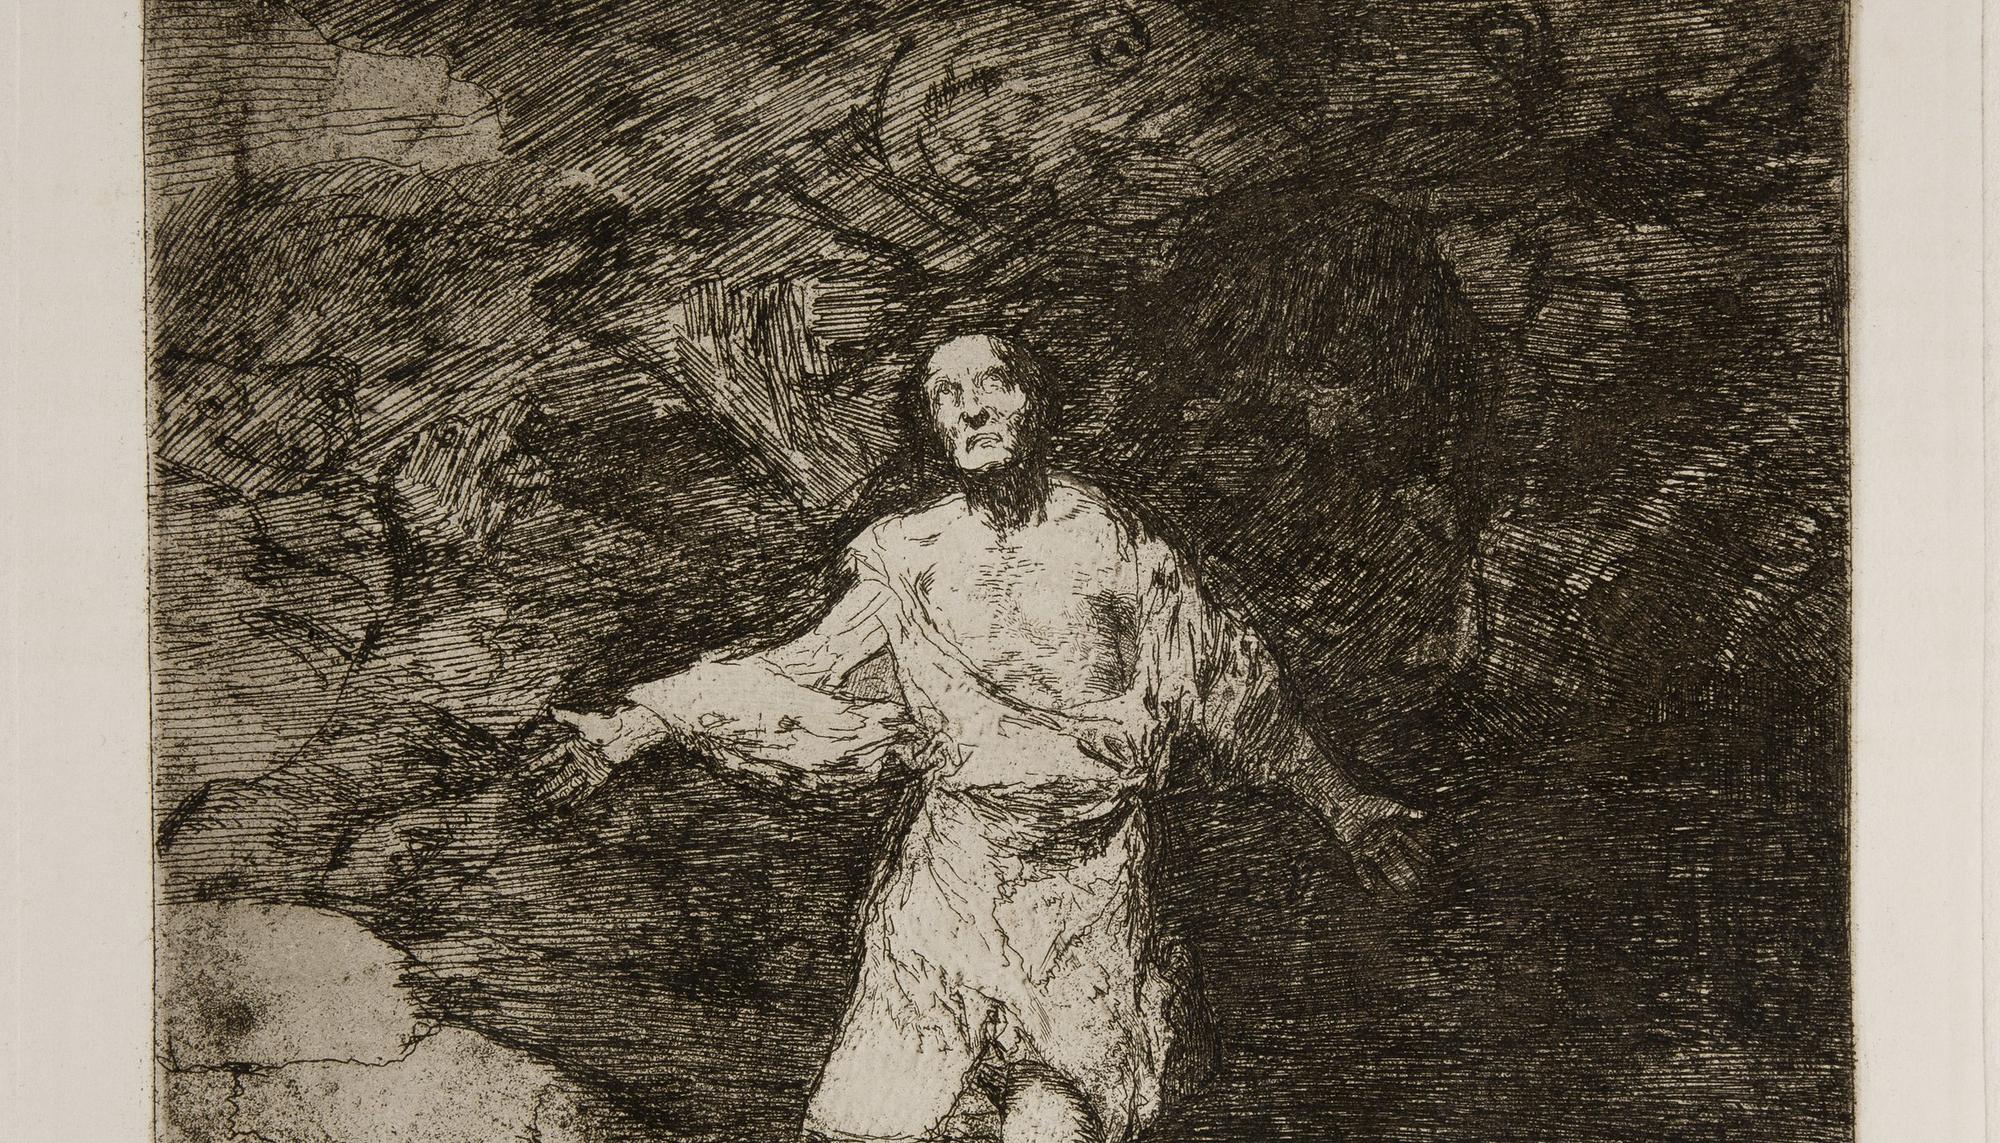 Tristes presentimientos de lo que ha de acontecer. Francisco de Goya